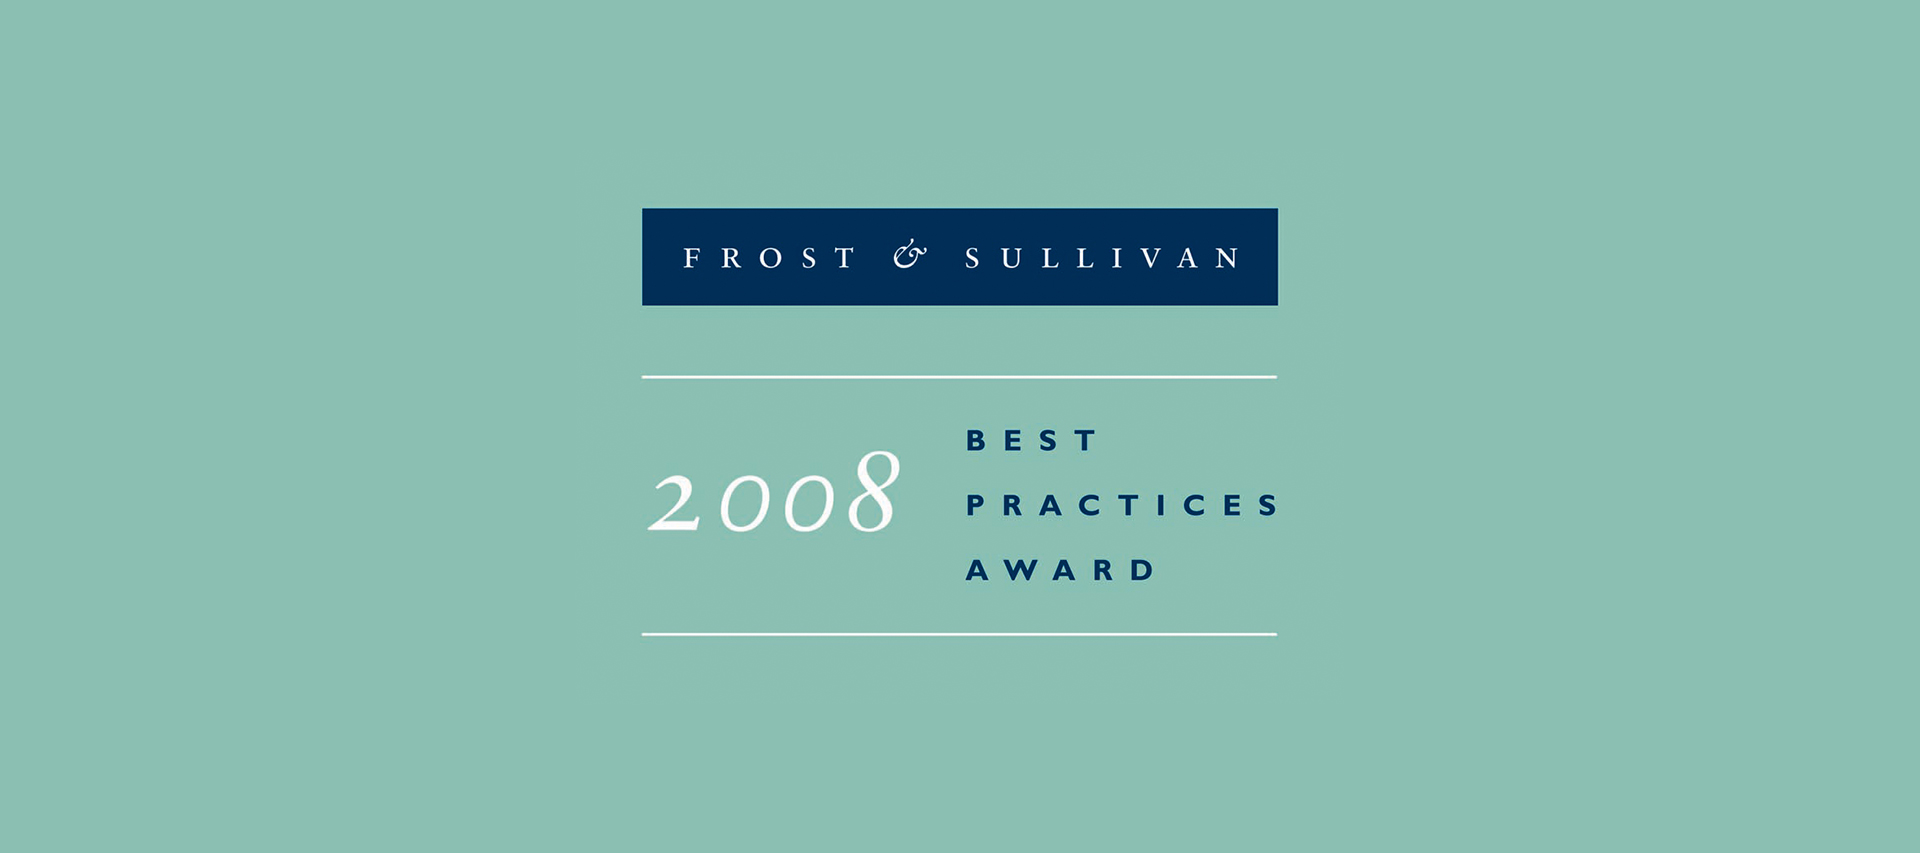 Frost & Sullivan Award 2008